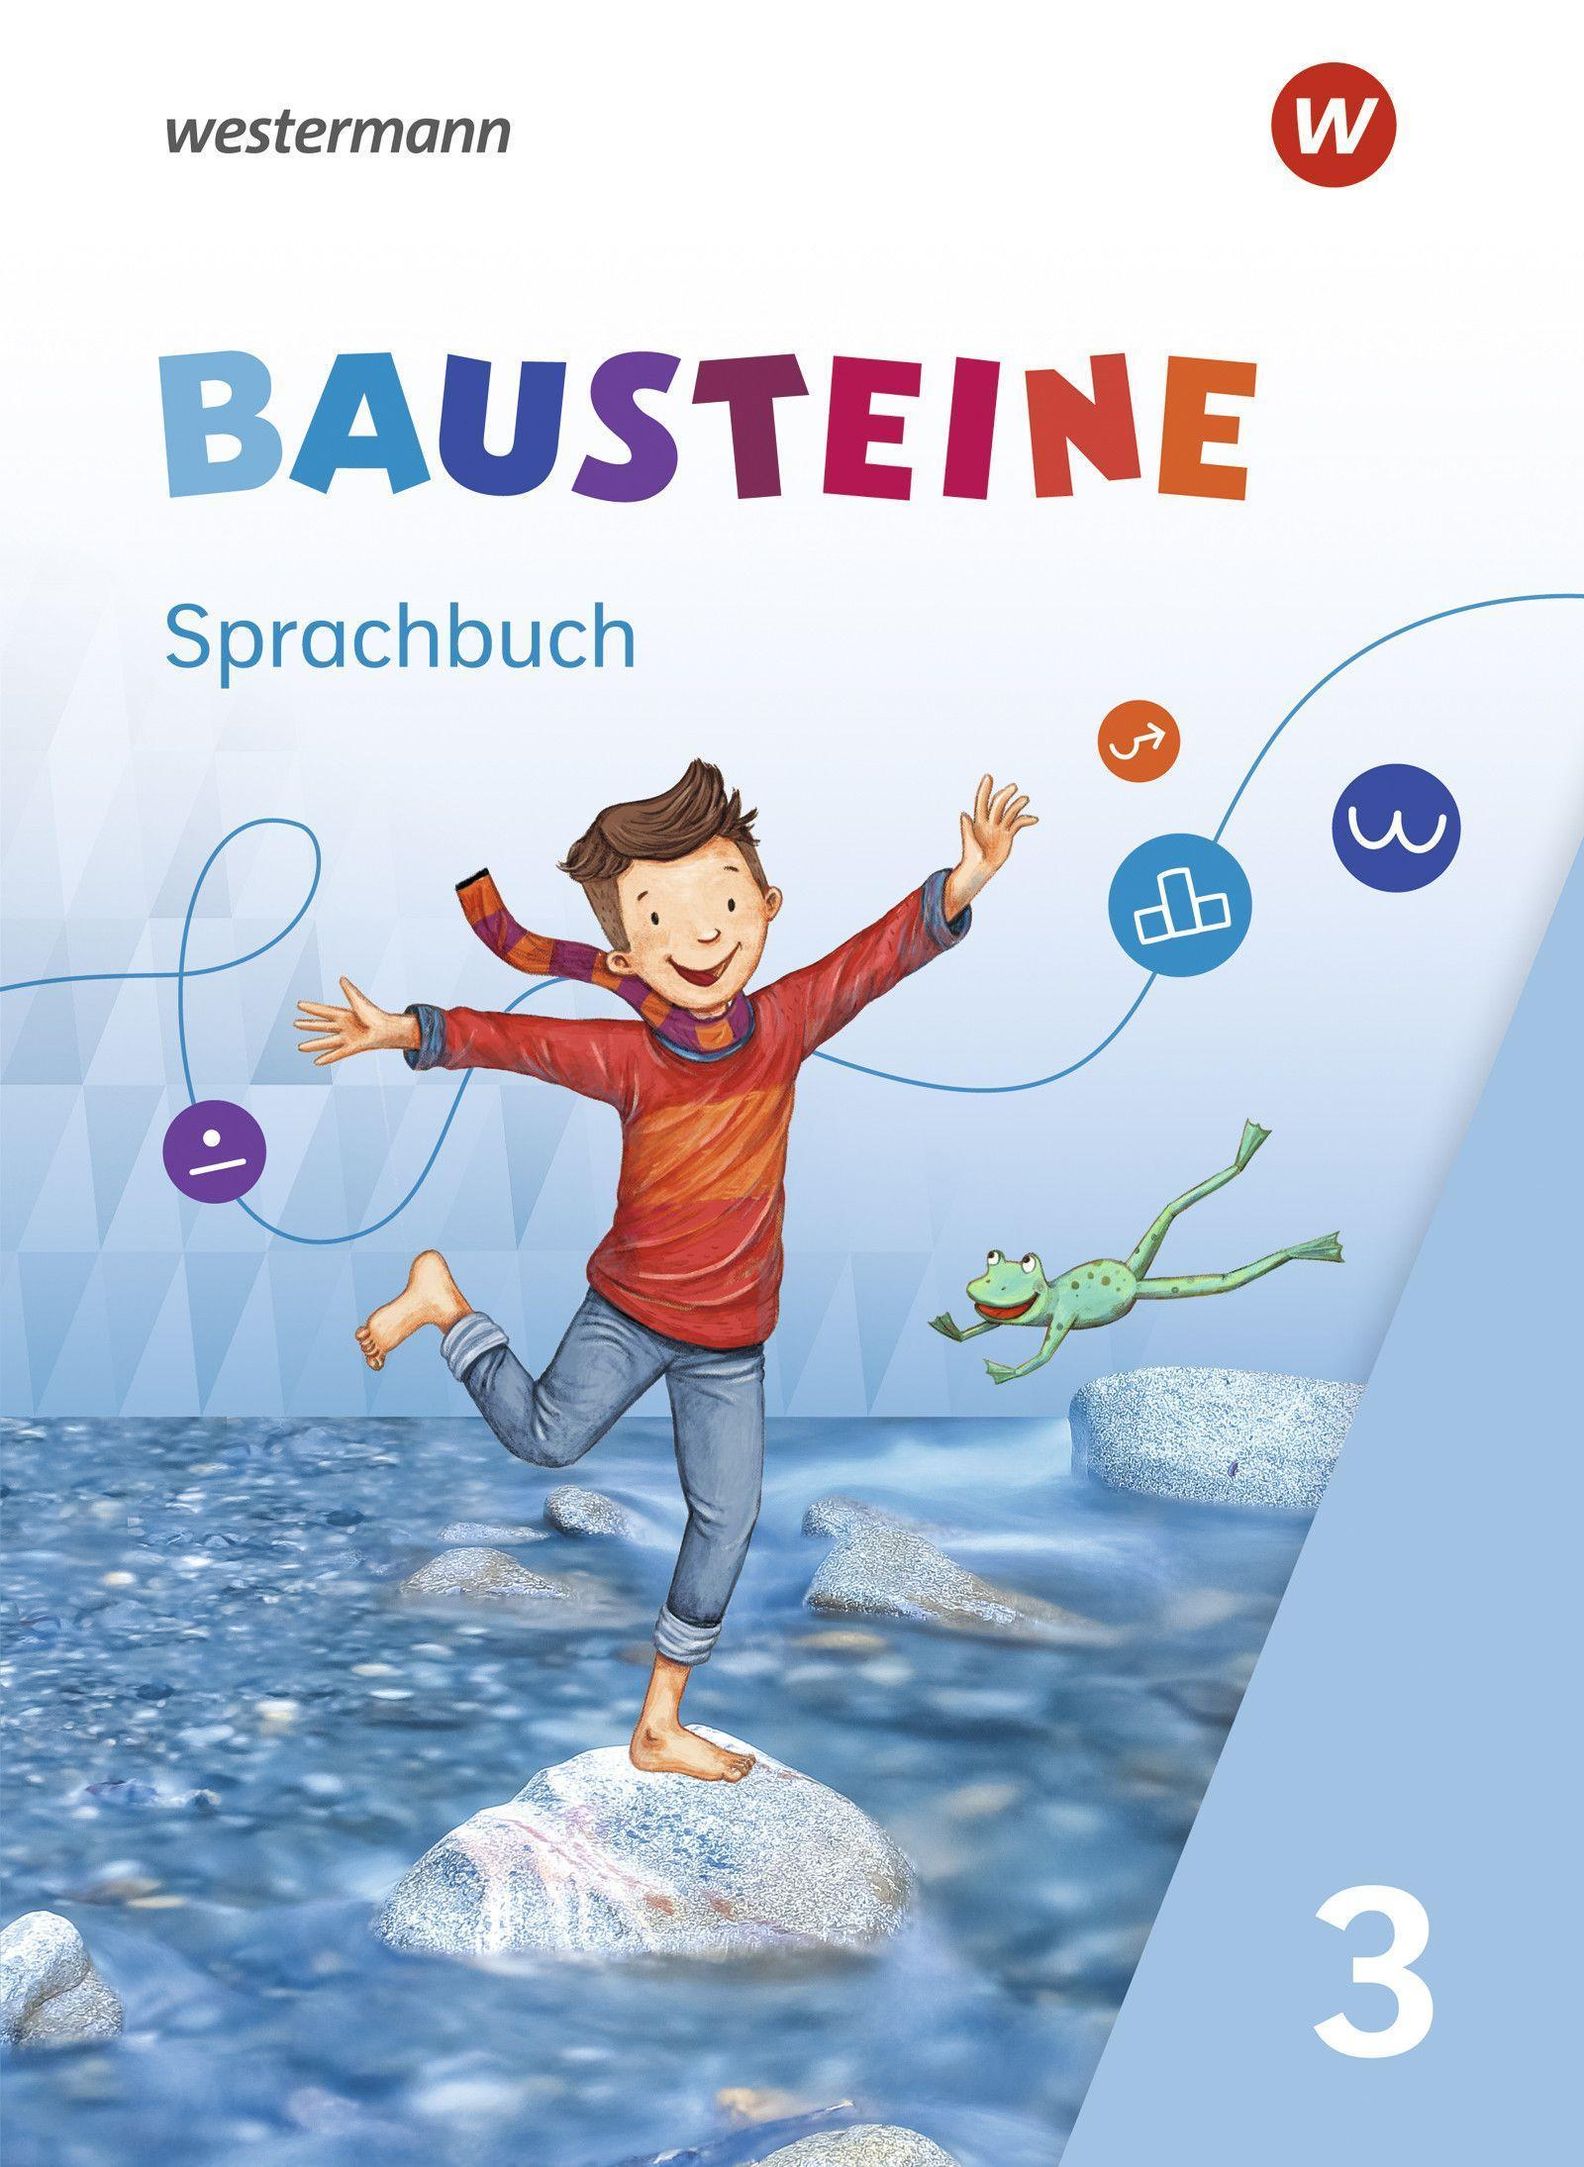 BAUSTEINE Sprachbuch - Ausgabe 2021 Buch versandkostenfrei bei Weltbild.de  bestellen